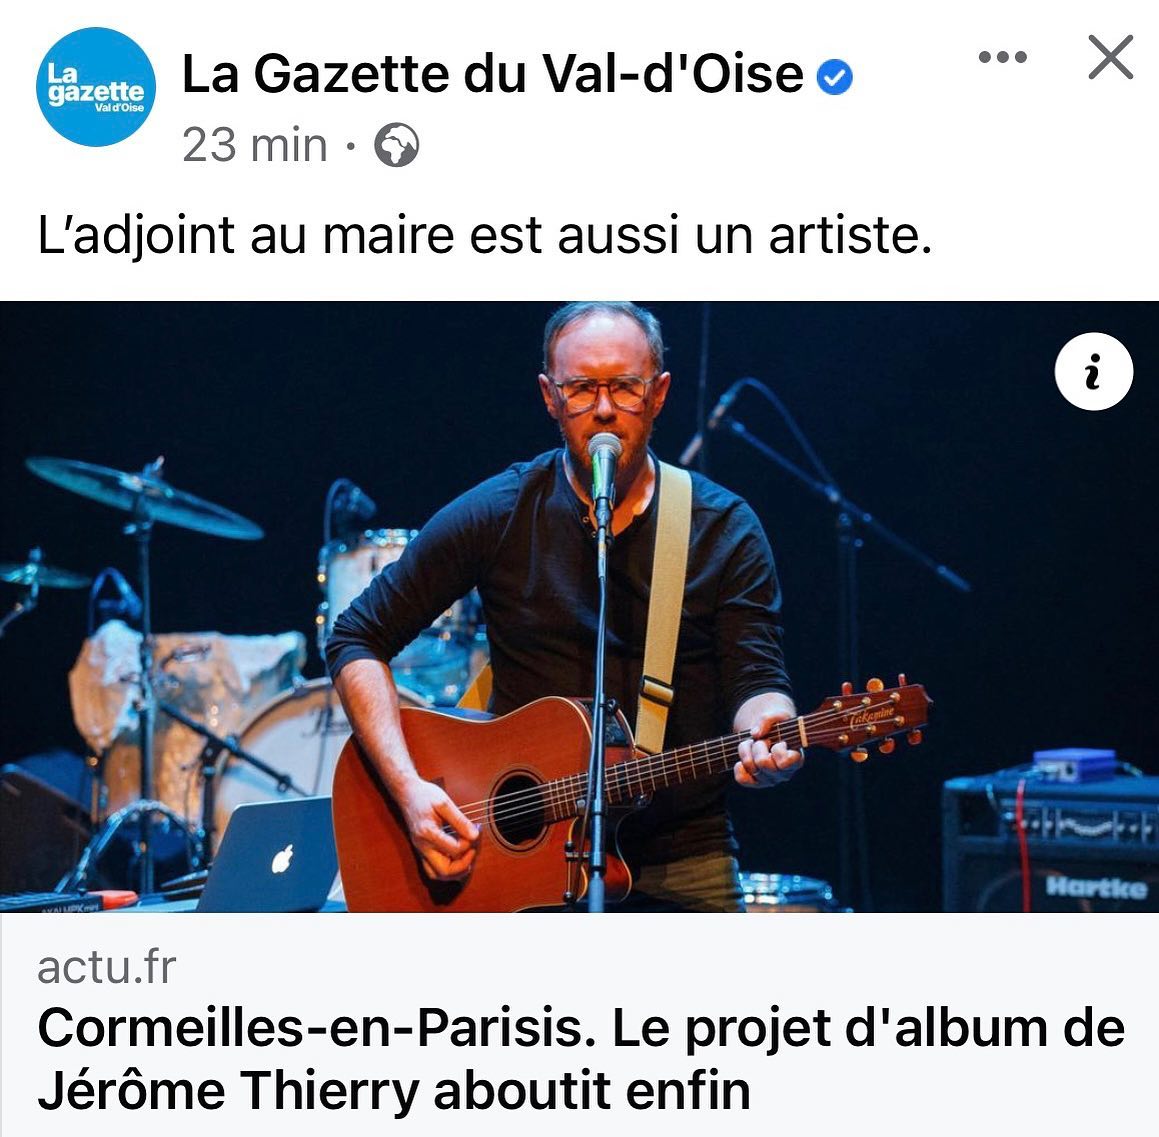 📰 Ce matin, dans La Gazette du Val-d'Oise ! Merci @danielchollet pour cet article complet et une parfaite retranscription journalistique de ma bio.
#presse #lagazetteduvaldoise #jeromethierry #alasurface #cormeillesenparisis